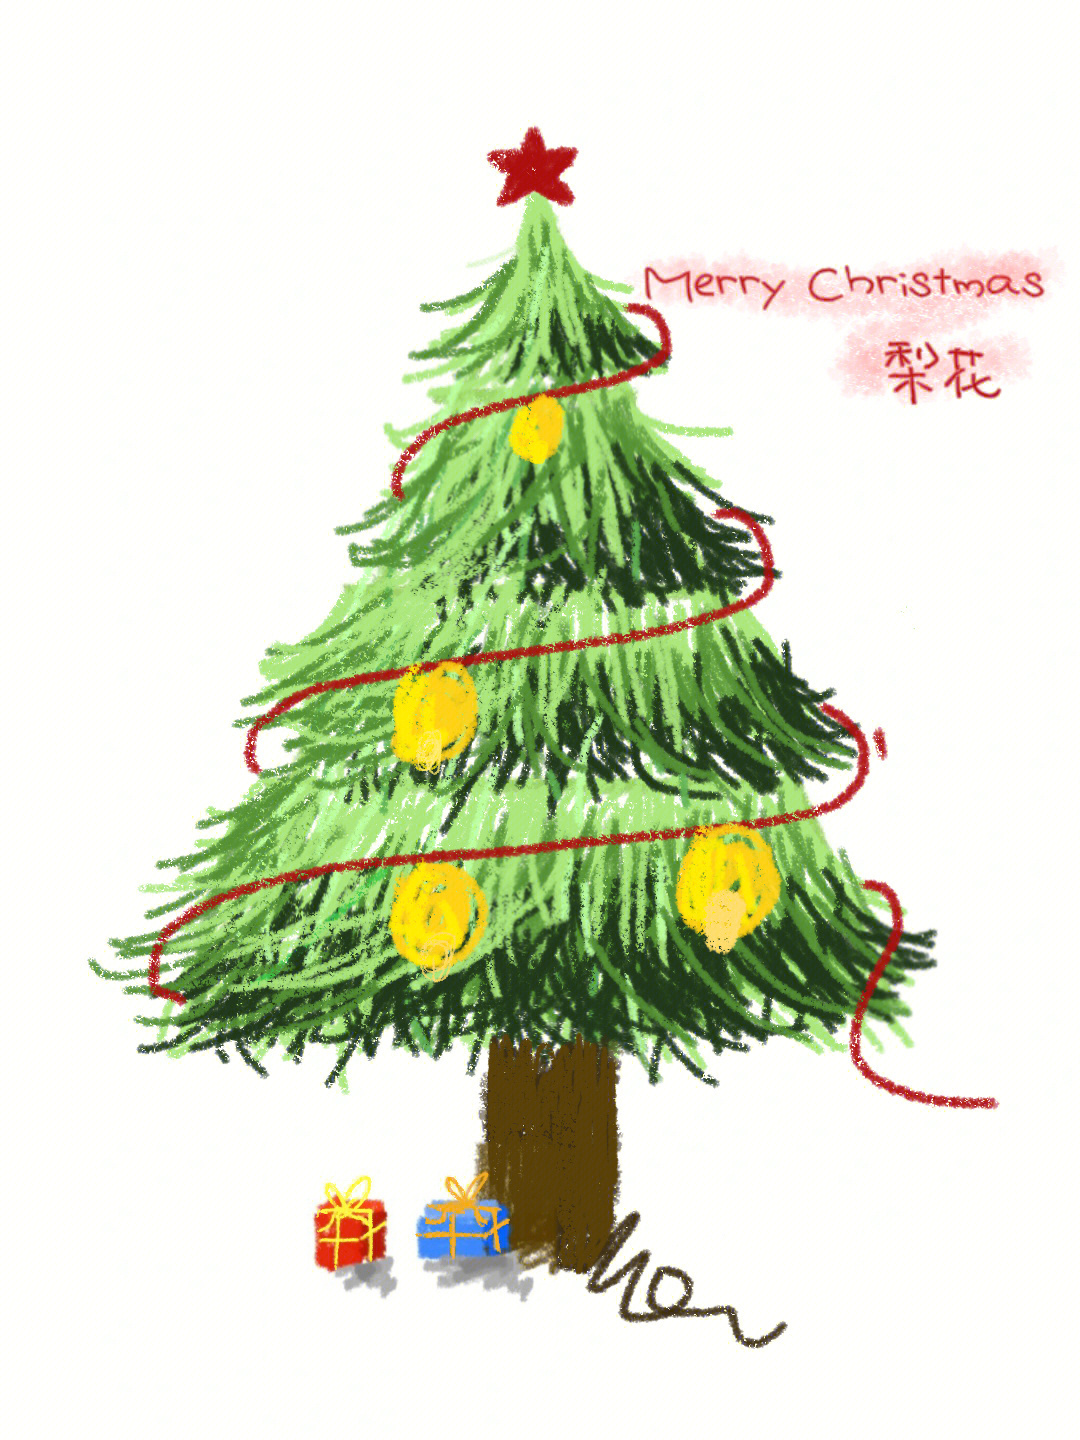 用手机画的圣诞树